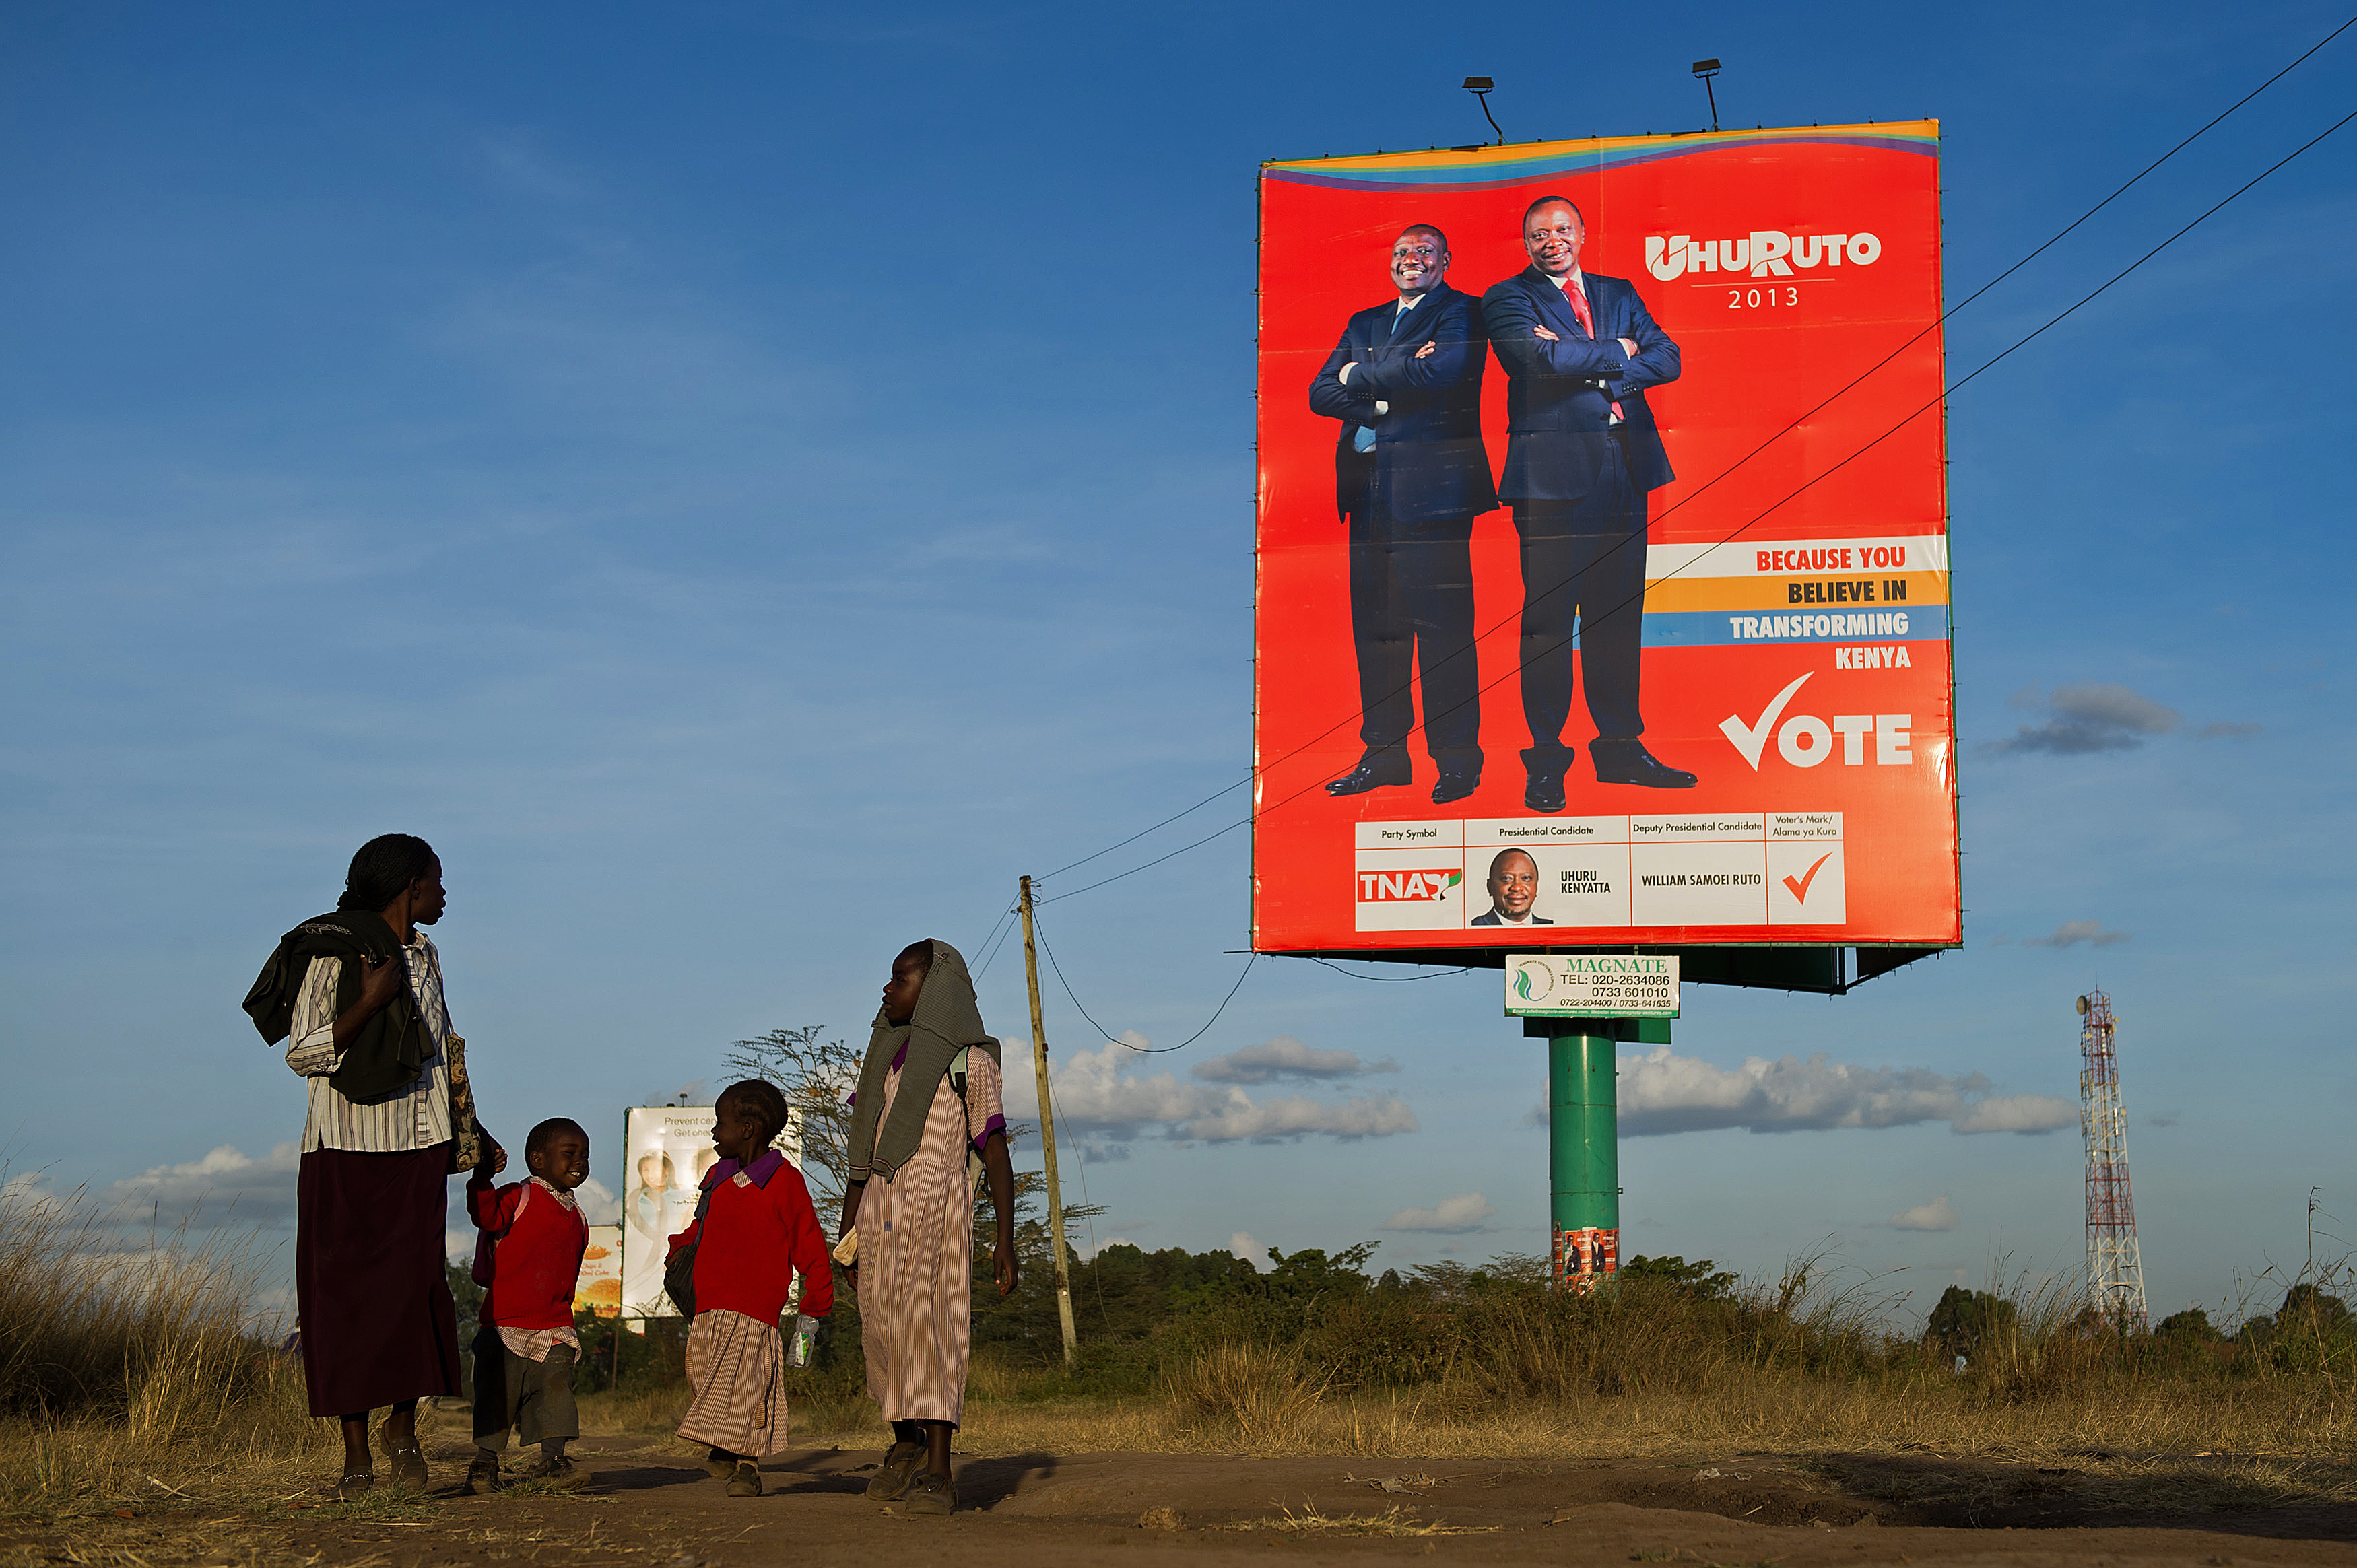 La República de Kenia celebra elecciones el 4 de marzo que pueden acabar en violencia